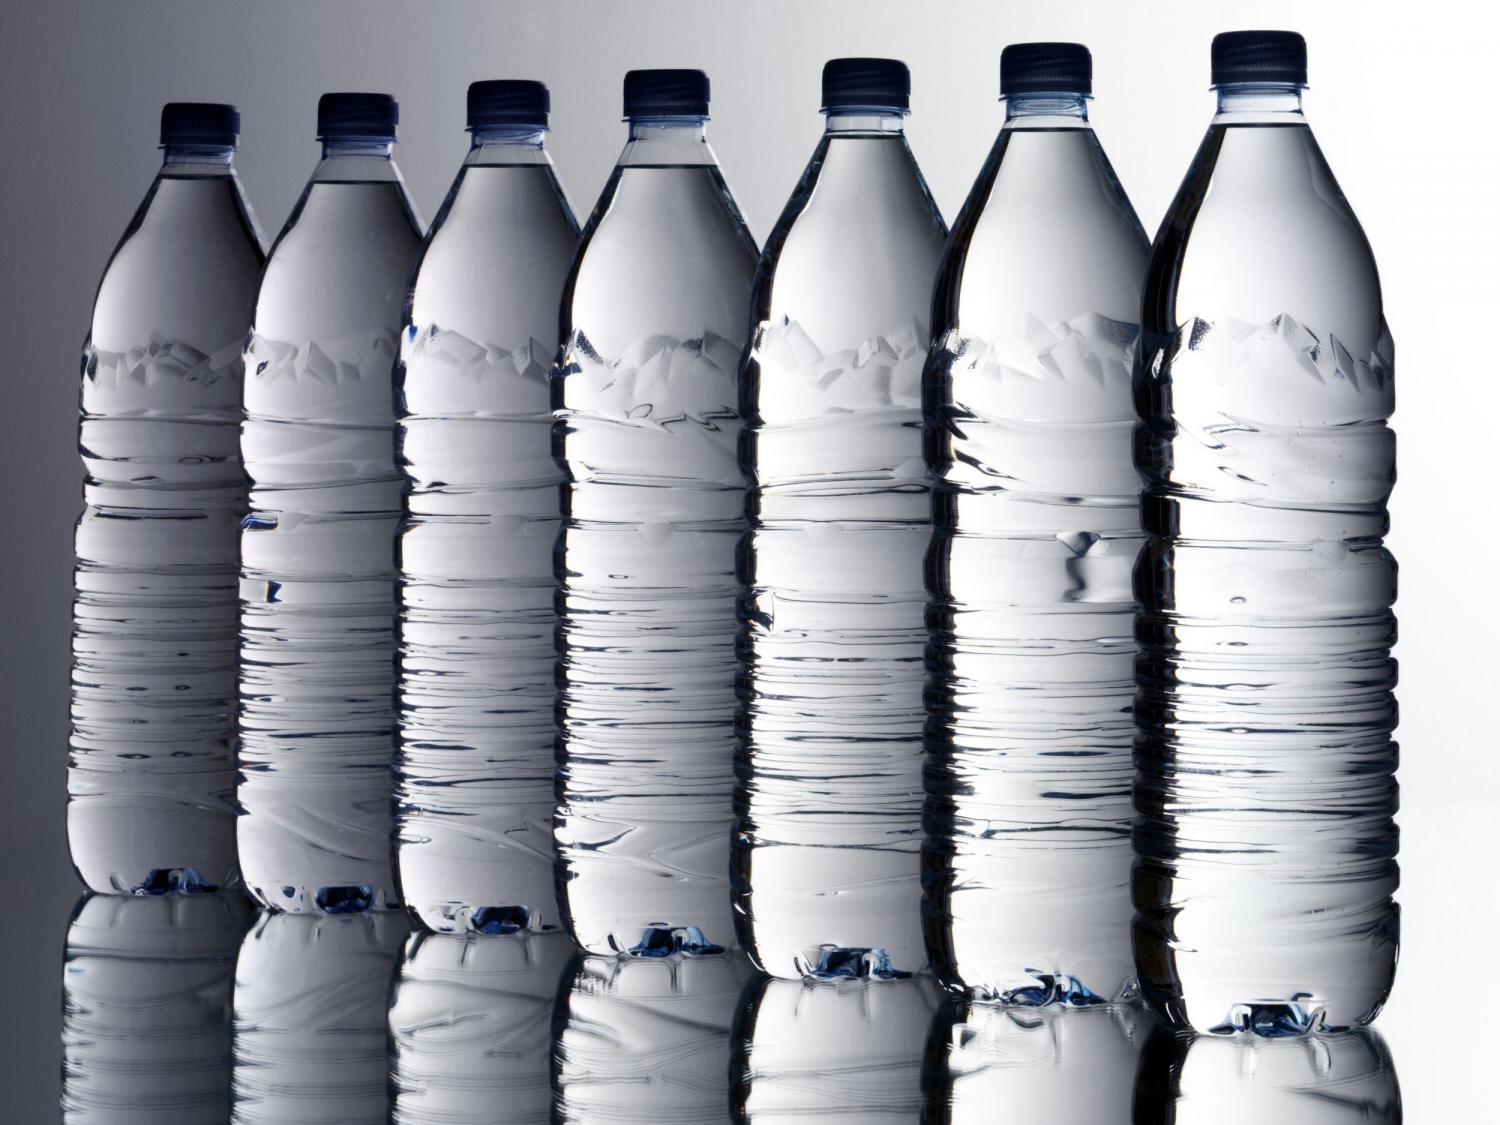 Finalmente anche in Italia sarà possibile produrre bottiglie in plastica 100% riciclata. Approvato l’emendamento Ferrazzi